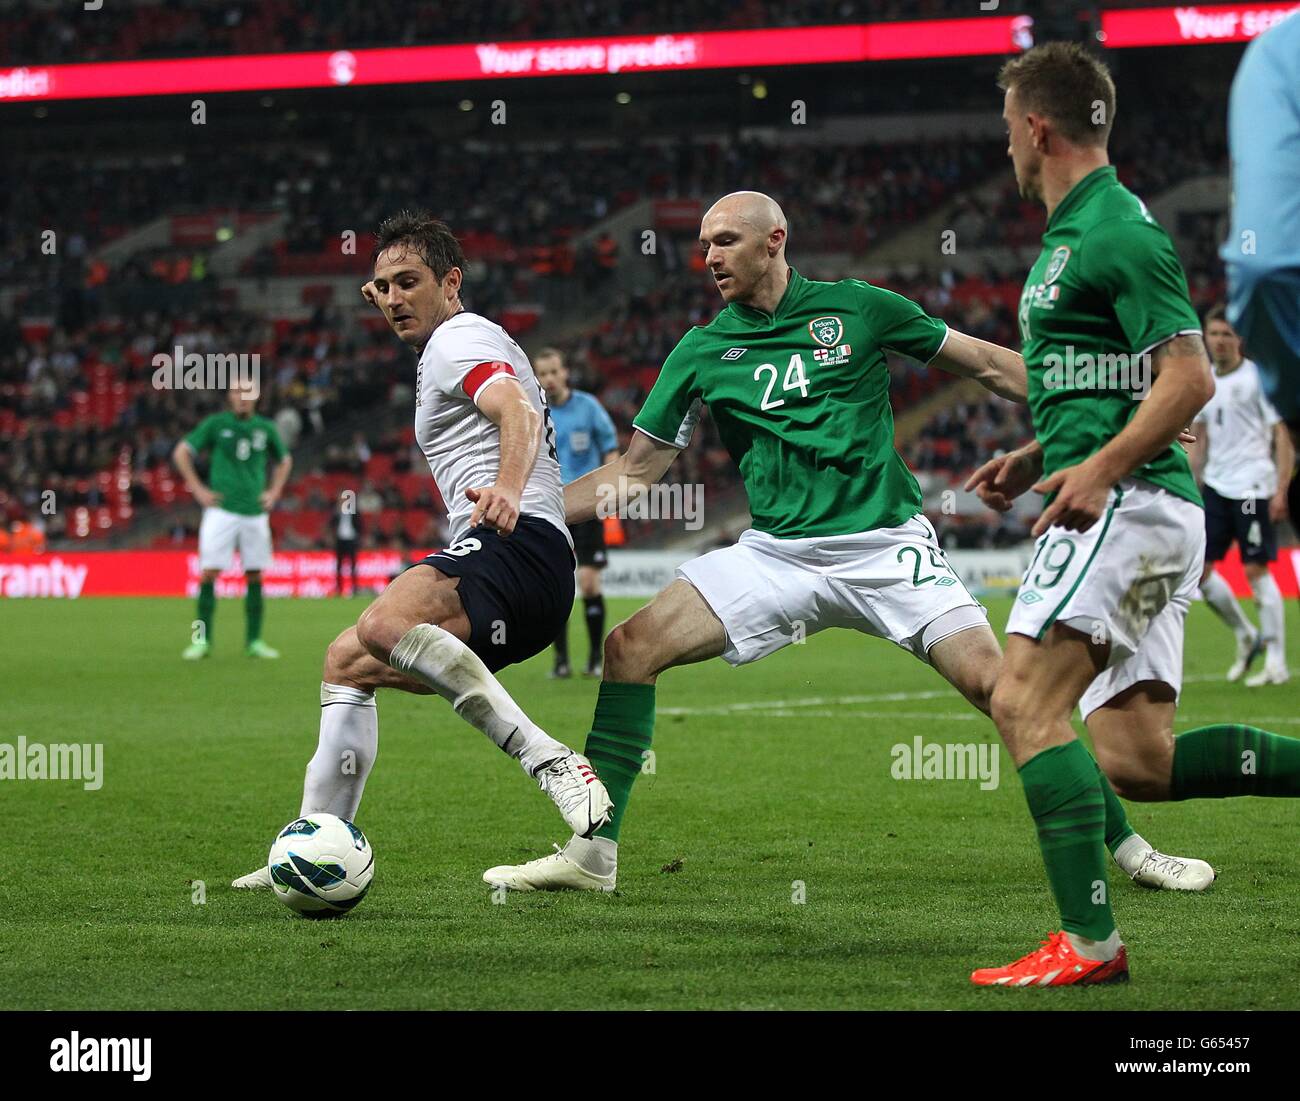 Calcio - Internazionale amichevole - Inghilterra / Repubblica d'Irlanda - Stadio di Wembley. Conor Sammon della Repubblica d'Irlanda (a destra) e Frank Lampard dell'Inghilterra (a sinistra) lottano per la palla Foto Stock